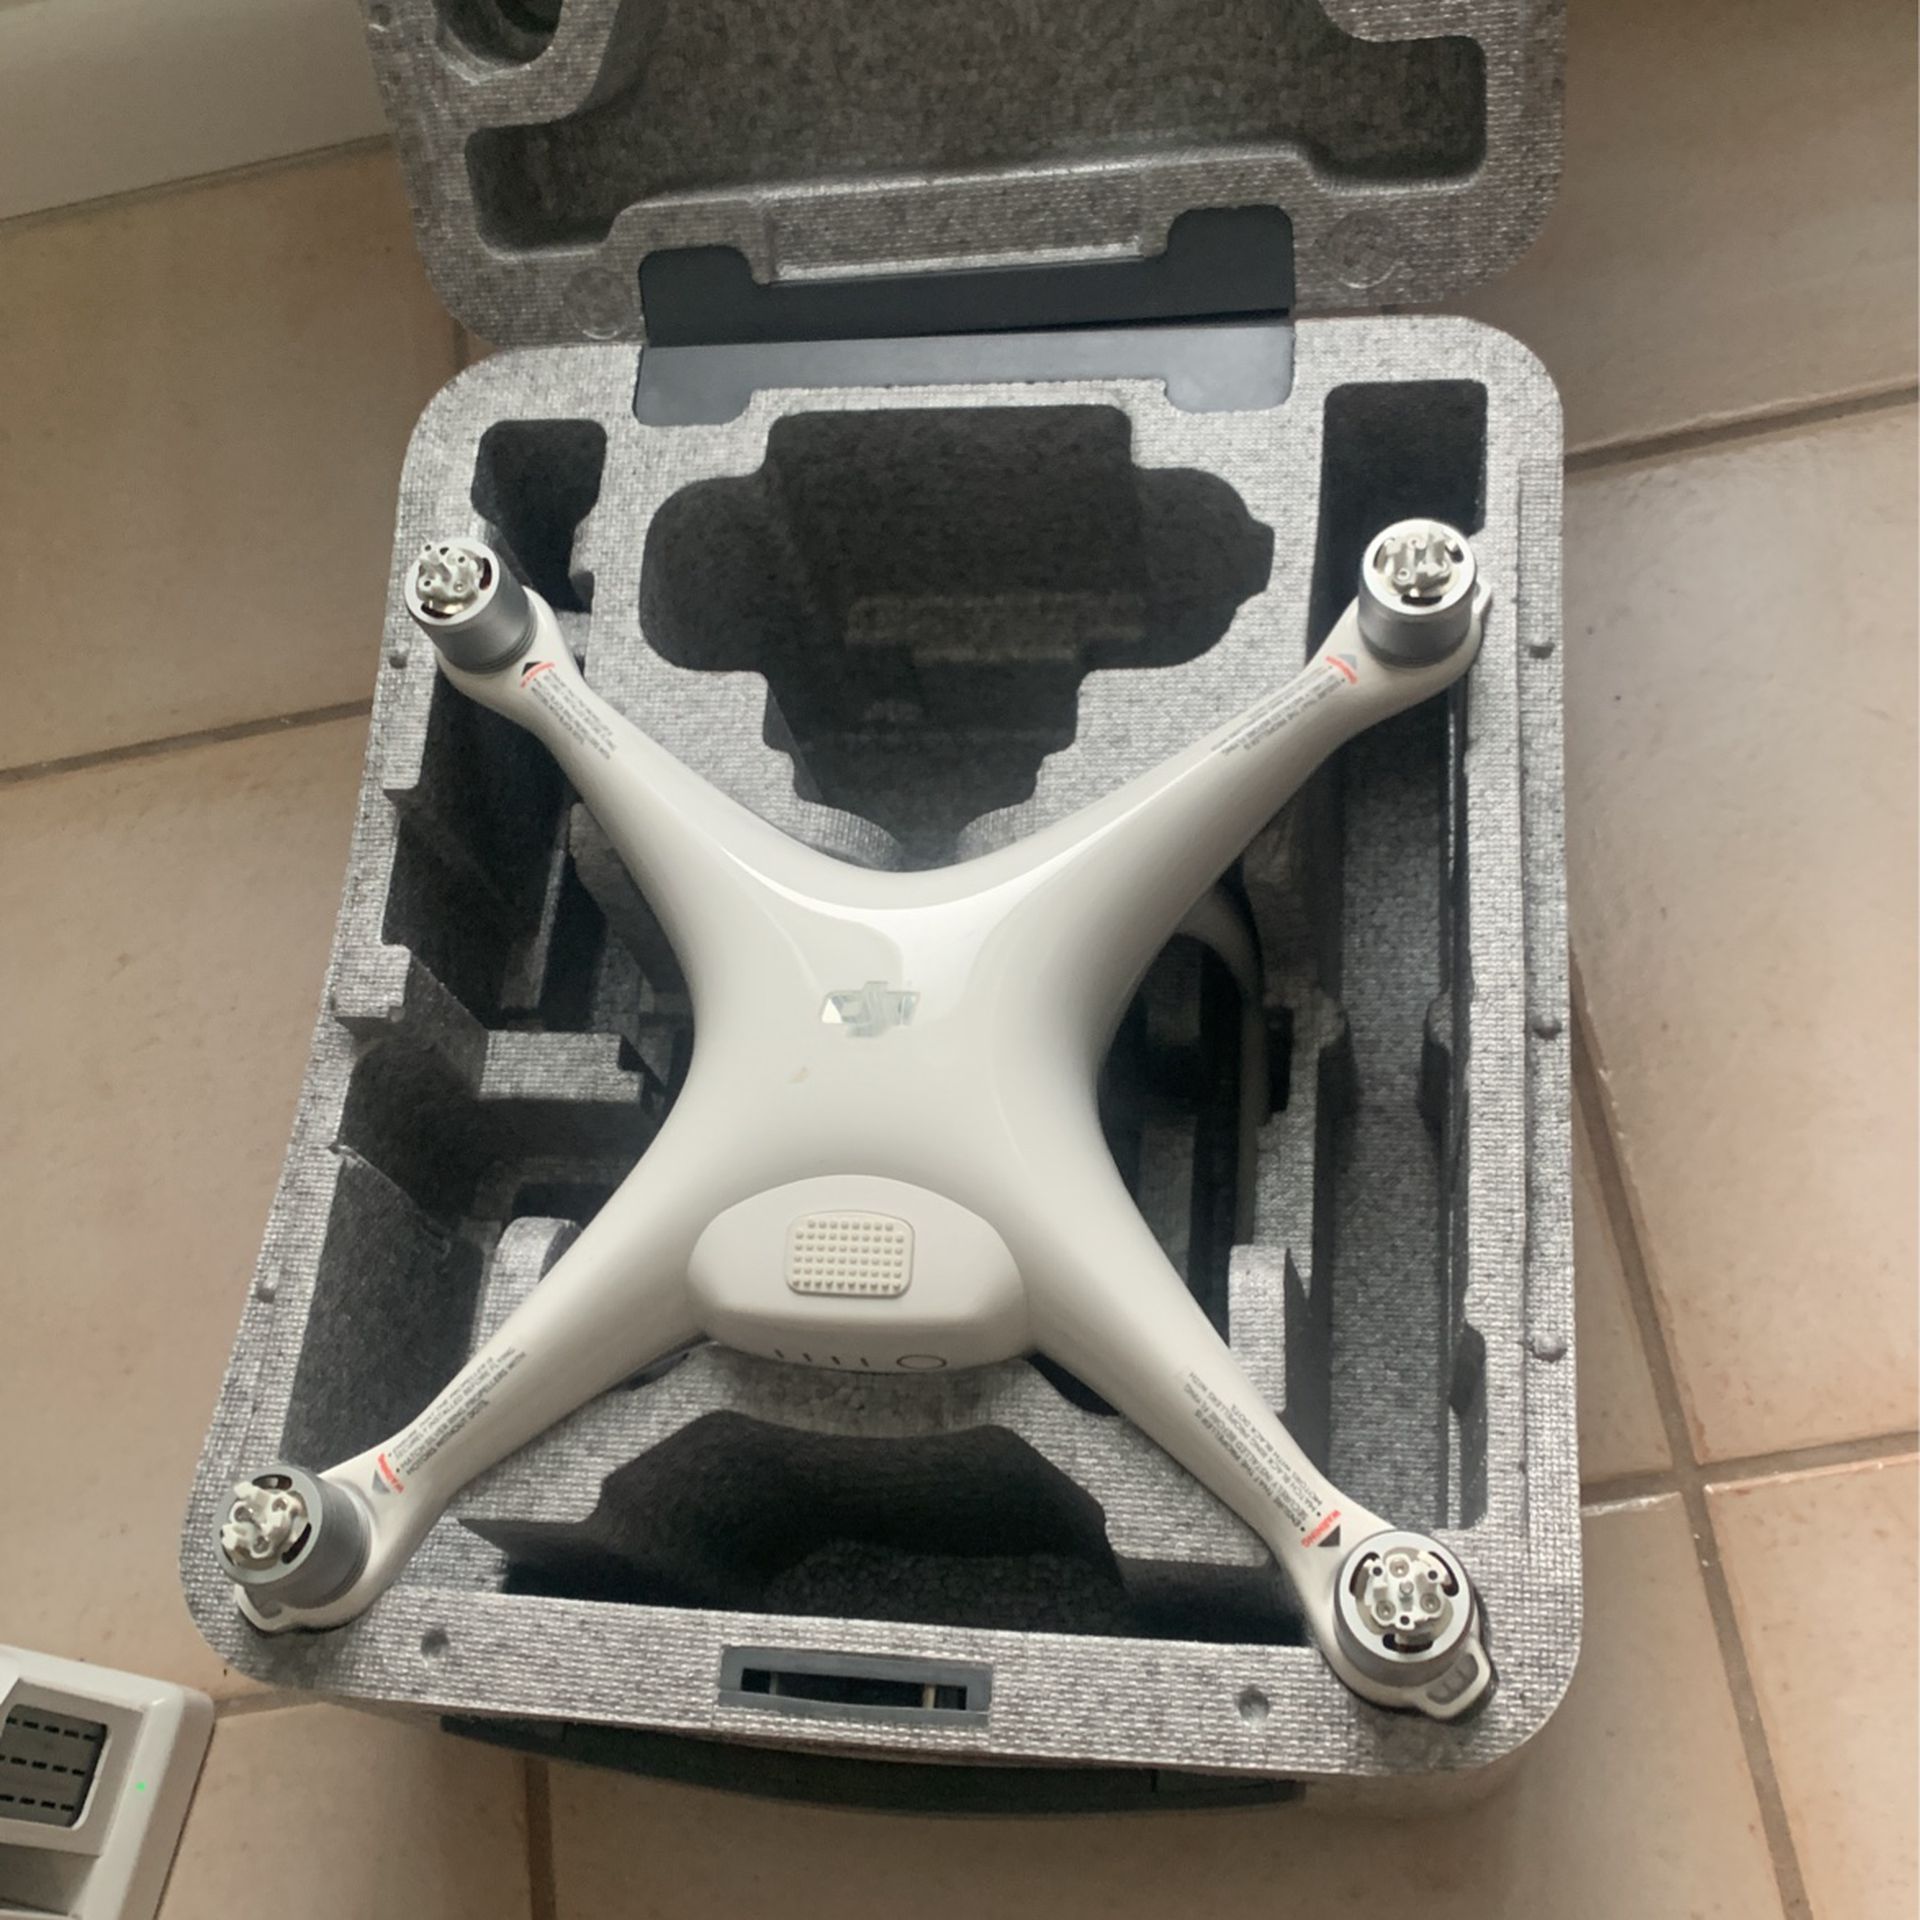 DJI Phantom 4 Drone 